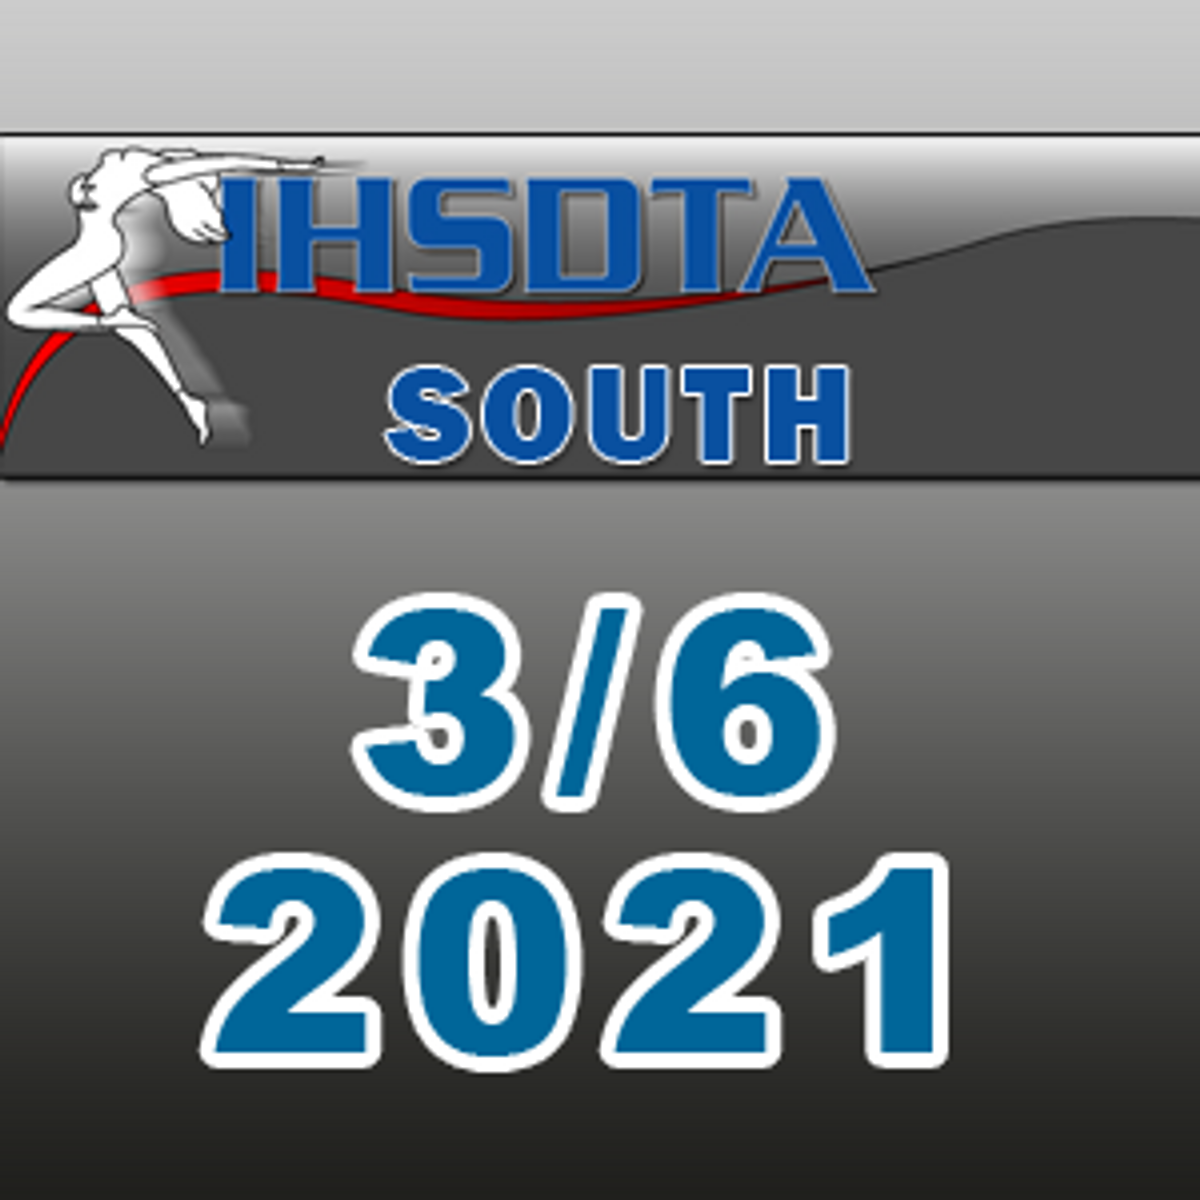 IHSDTA - South Regional - 3/6/2021